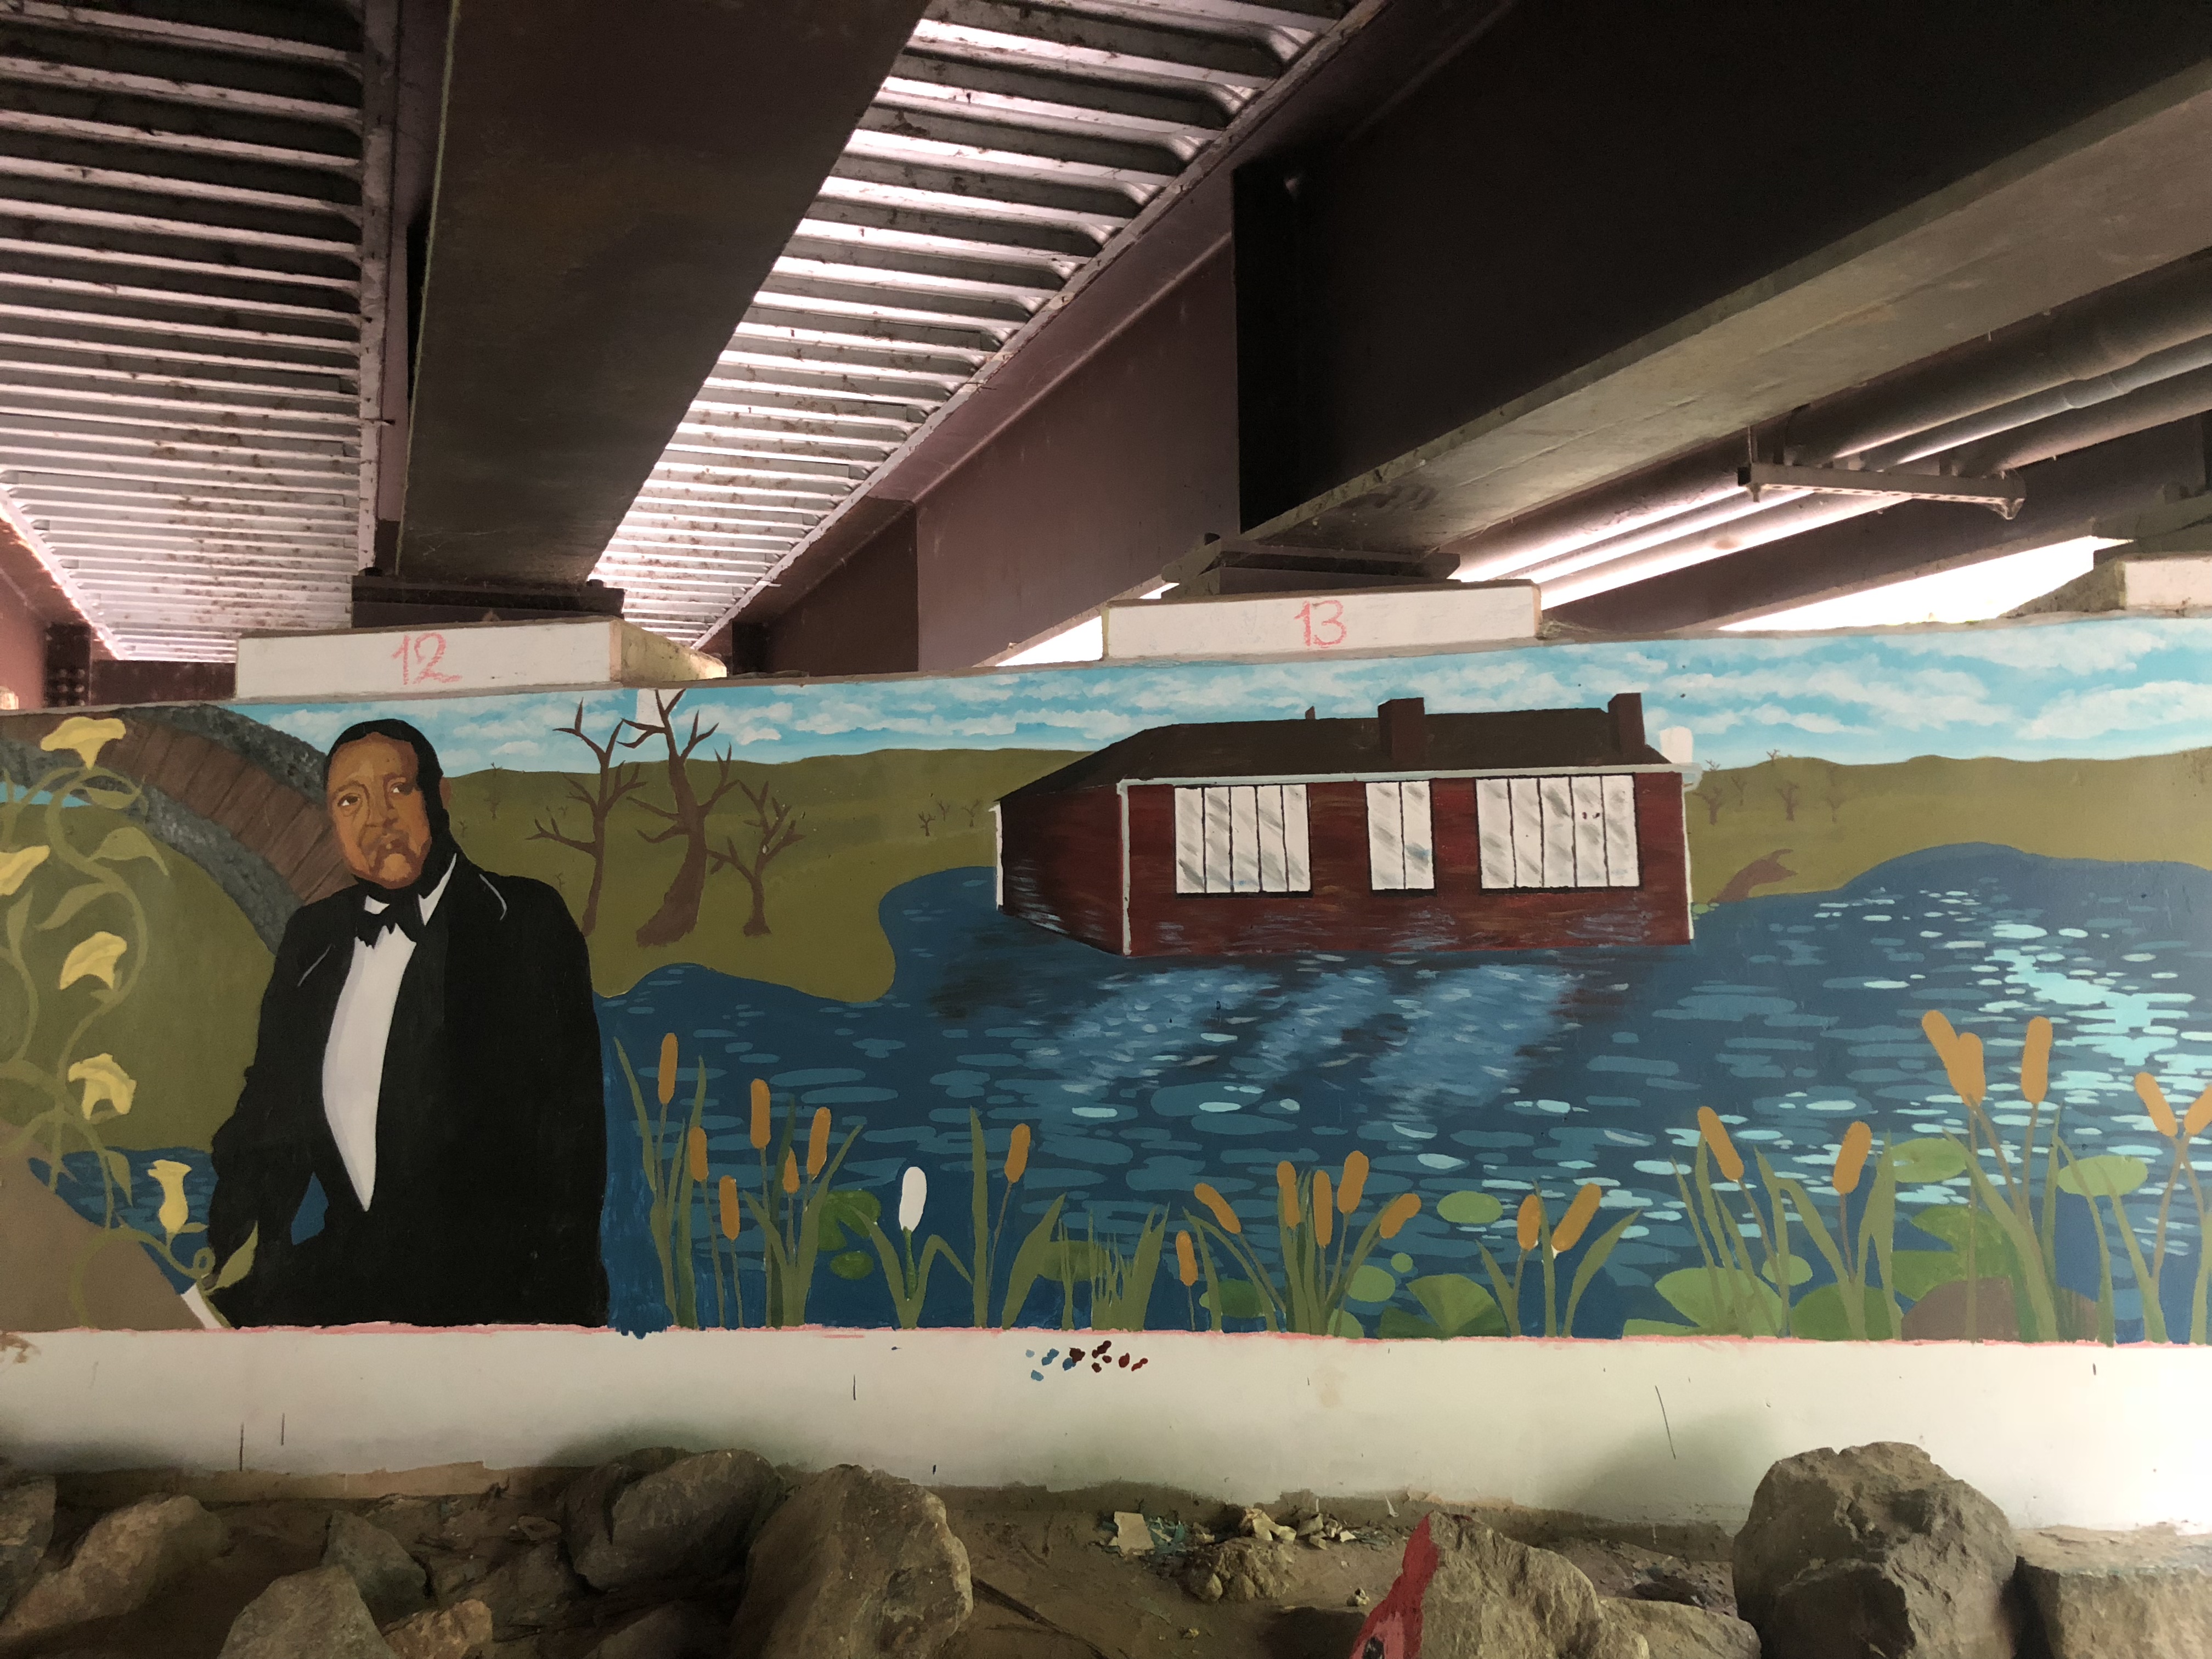 Paint Branch Bridge Mural Unveiled